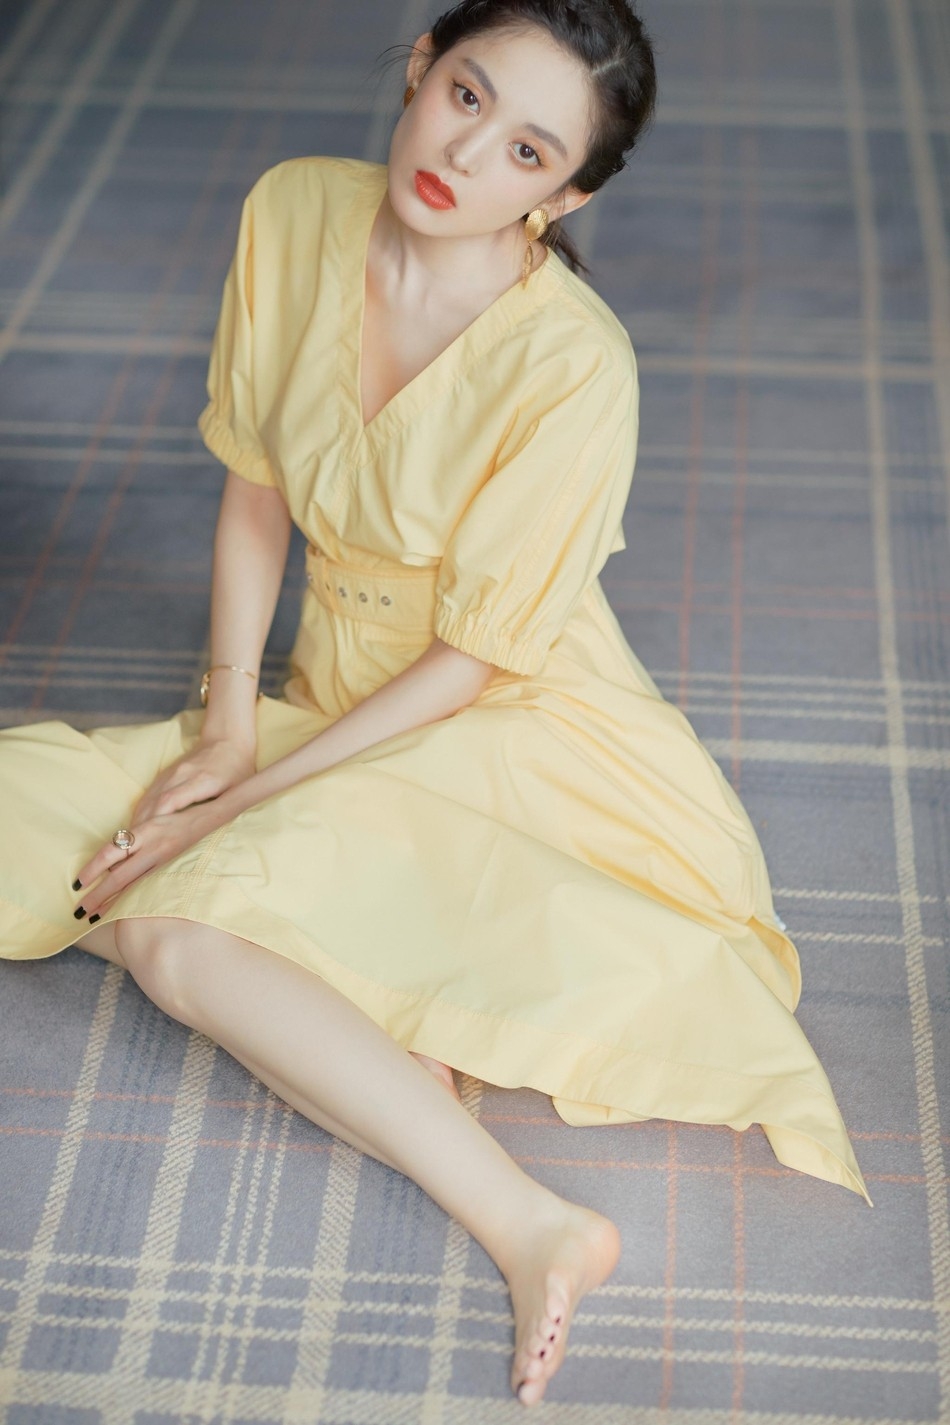 甜美成熟少女娜扎酥胸美腿黄色短裙小清新写真图片(3)